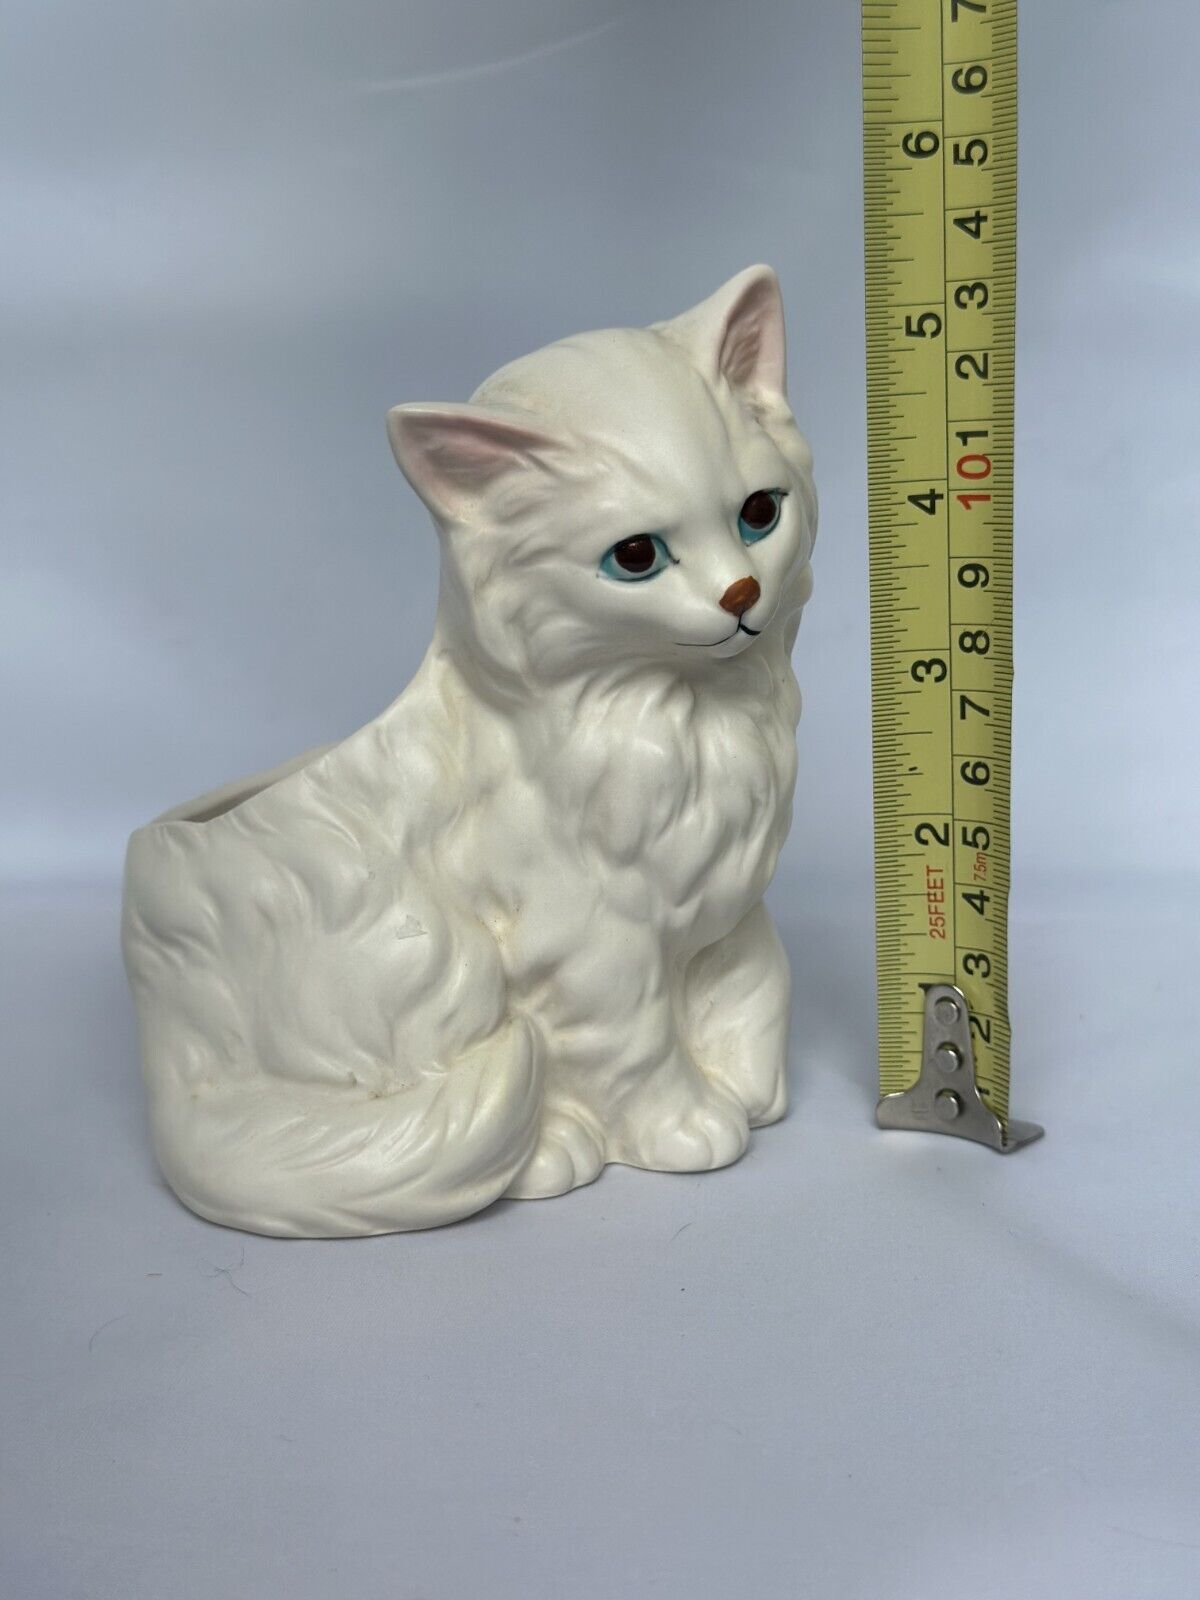 Vintage Napcoware Longhaired Persian White Kitten Figurine Planter